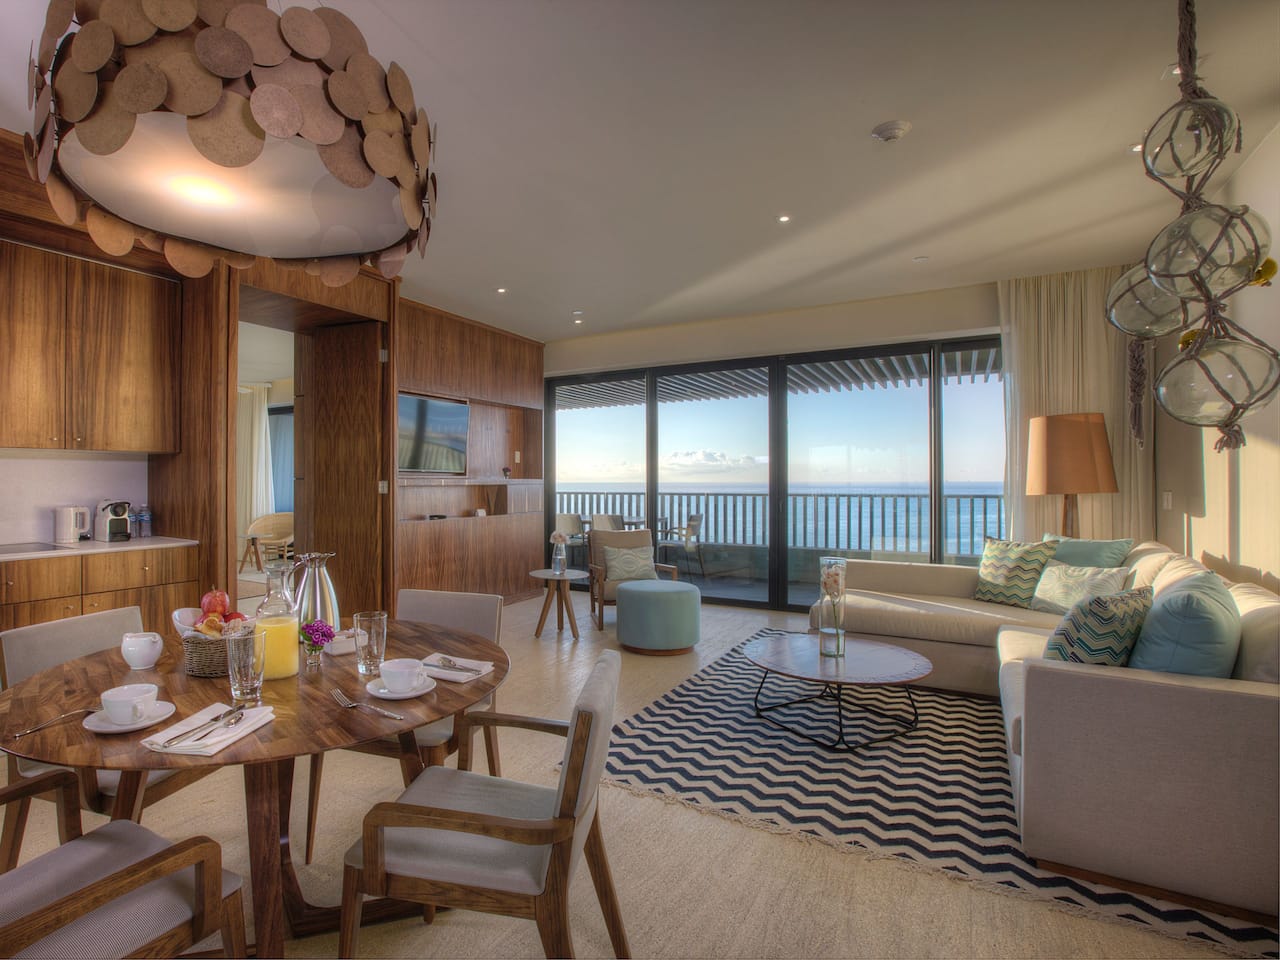 Executive suite at Grand Hyatt Playa del Carmen